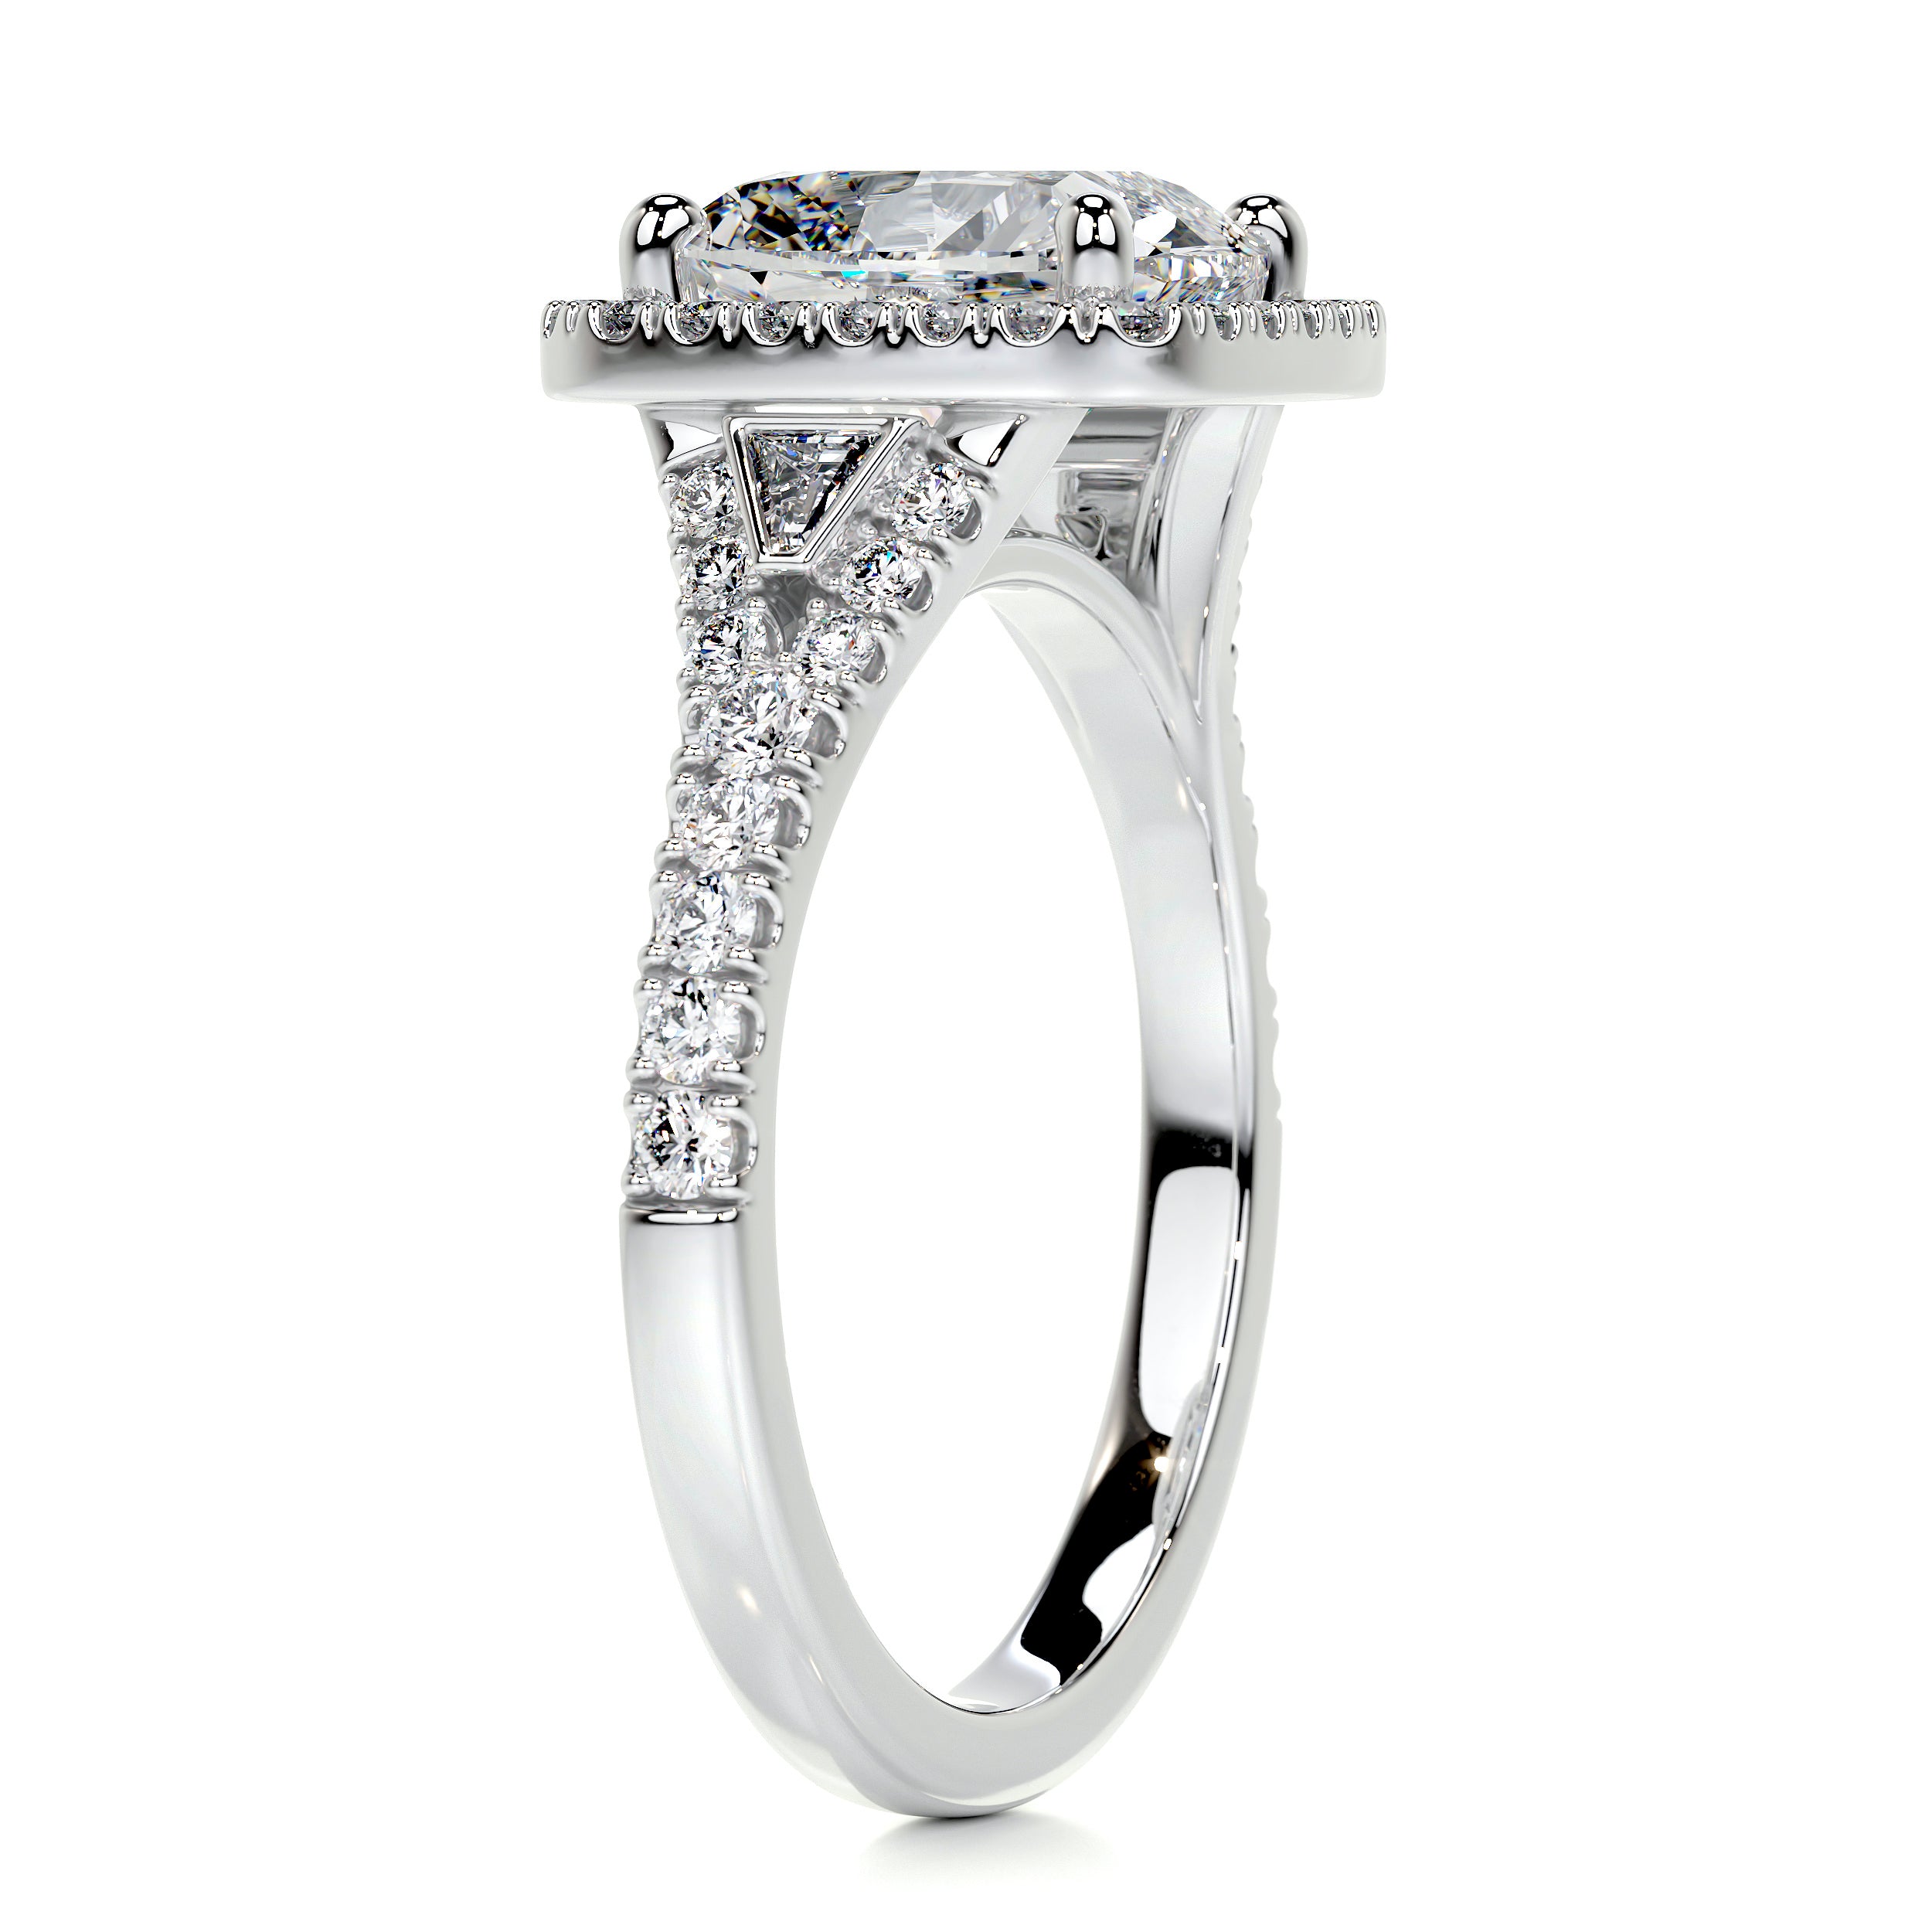 Lissete Diamond Engagement Ring   (3.65 Carat) -Platinum